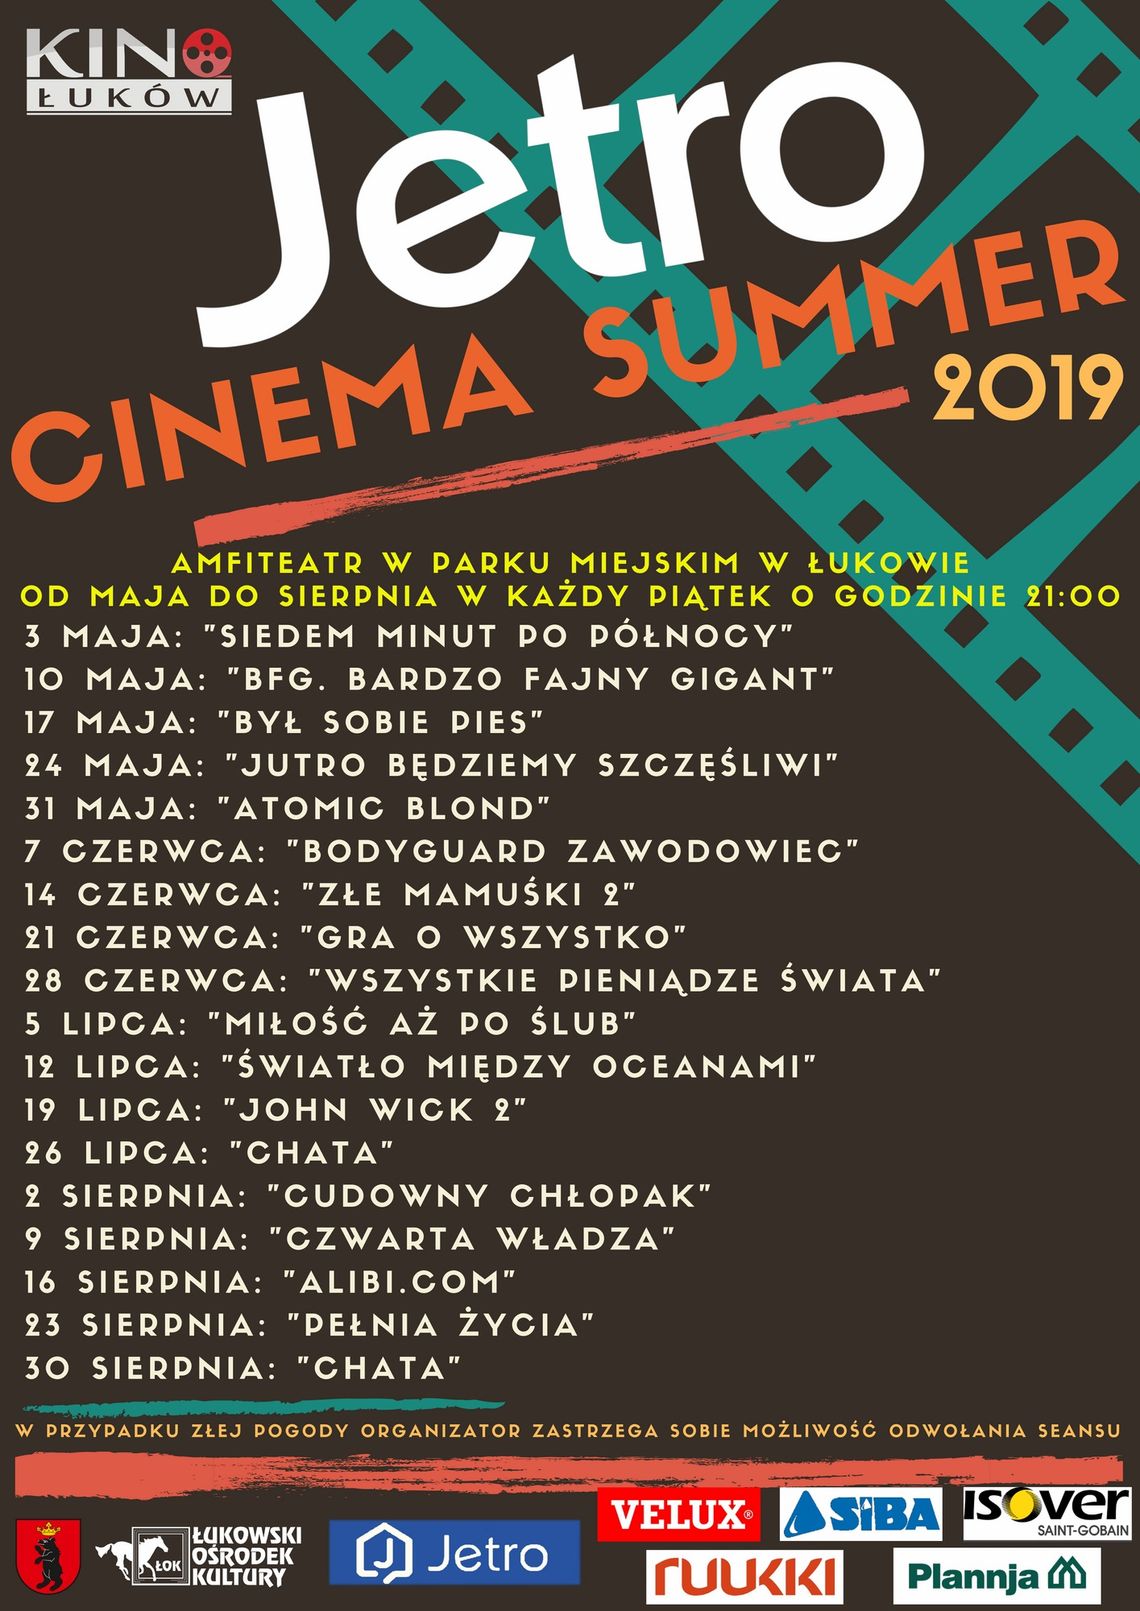 JETRO CINEMA SUMMER - „ALIBI.COM”